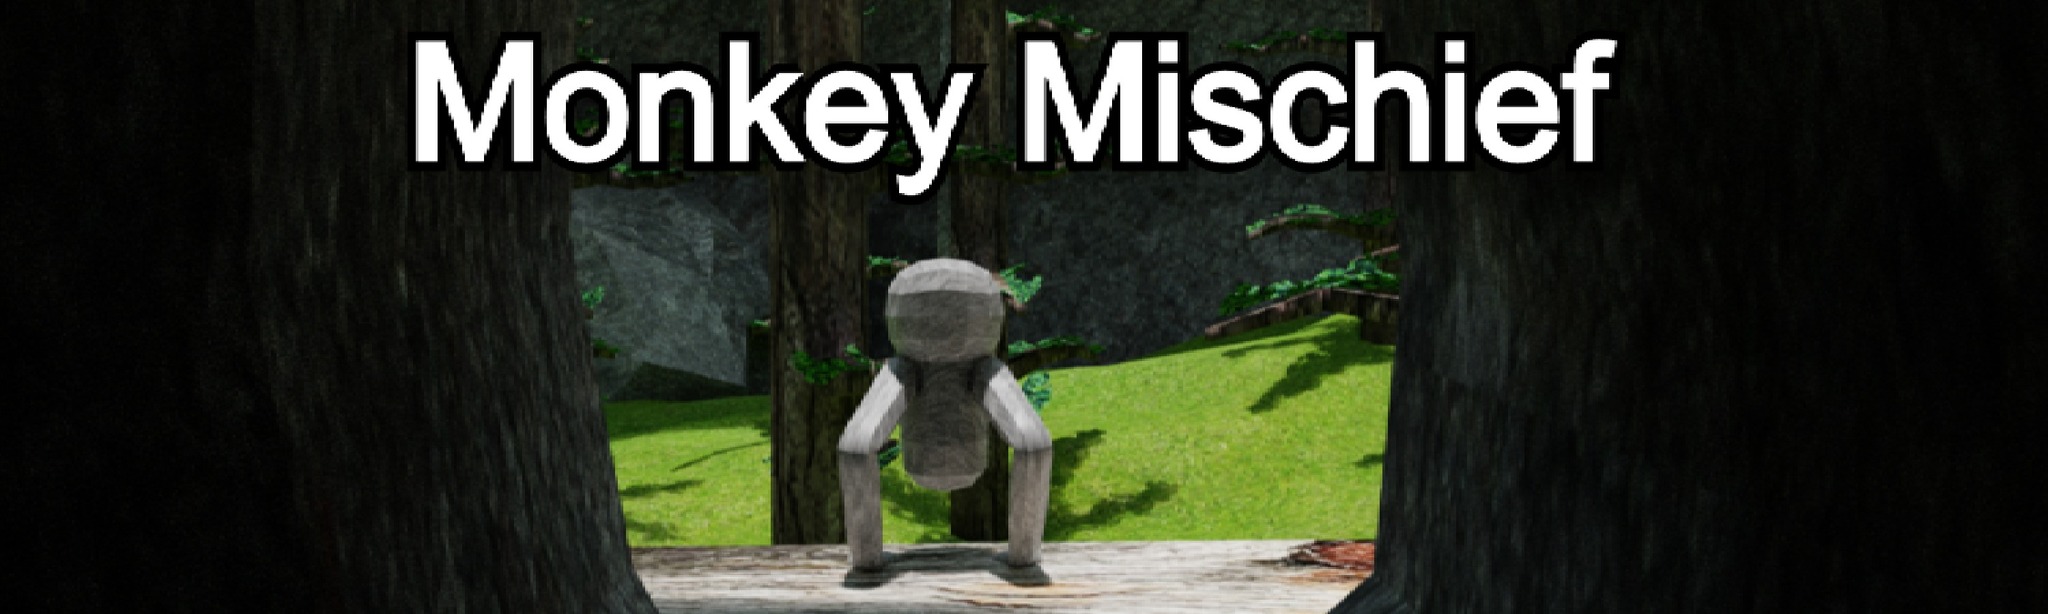 Monkey Mischief V2